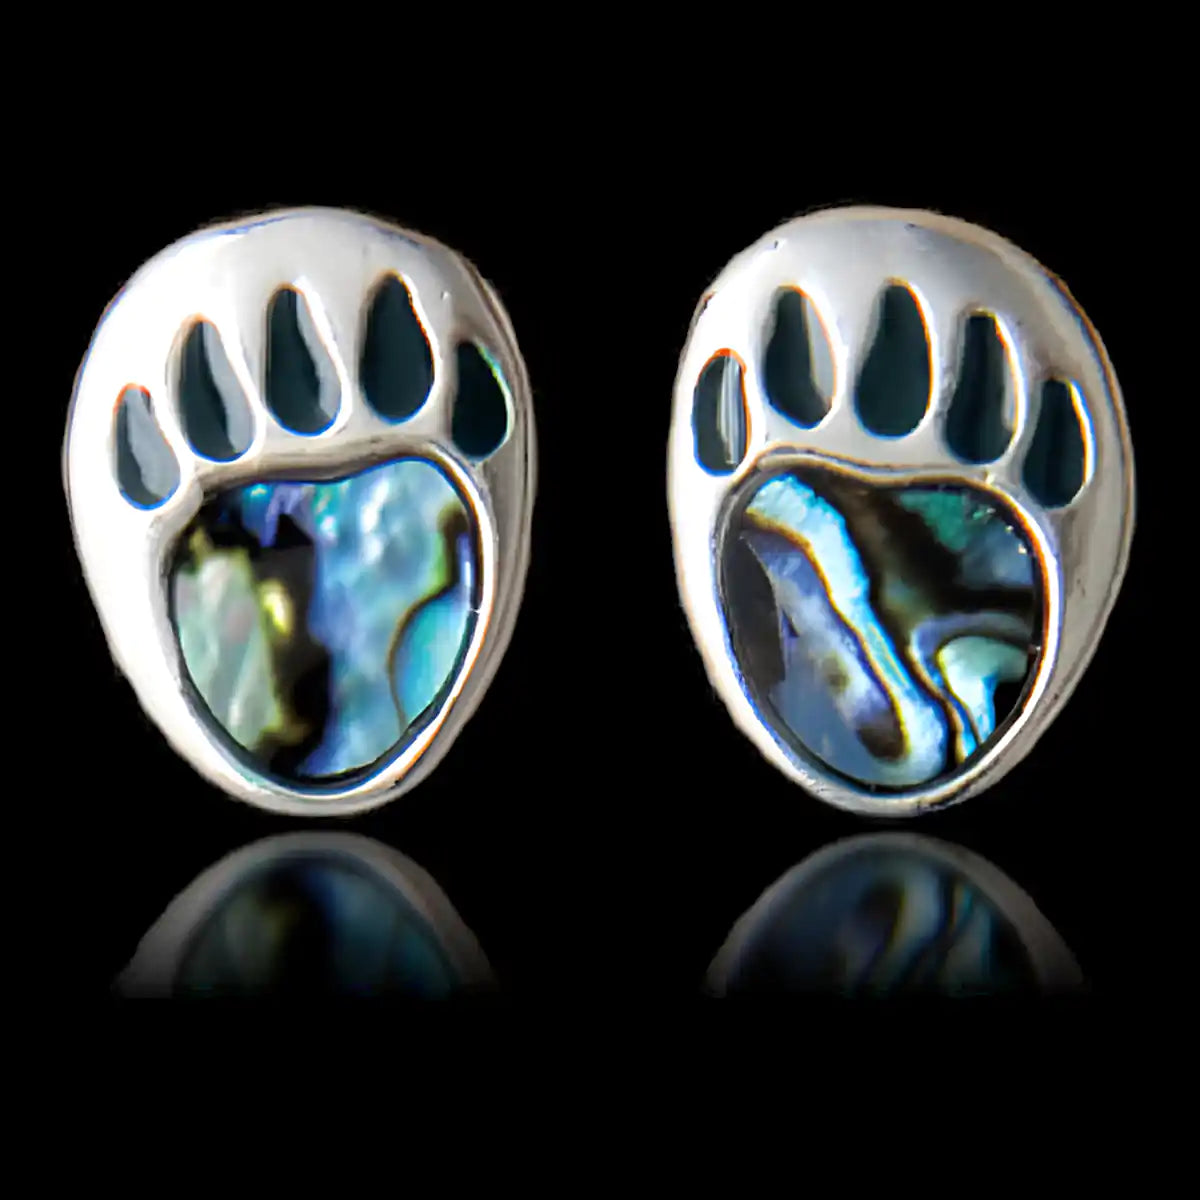 Glacier pearle bear paw-stud earrings